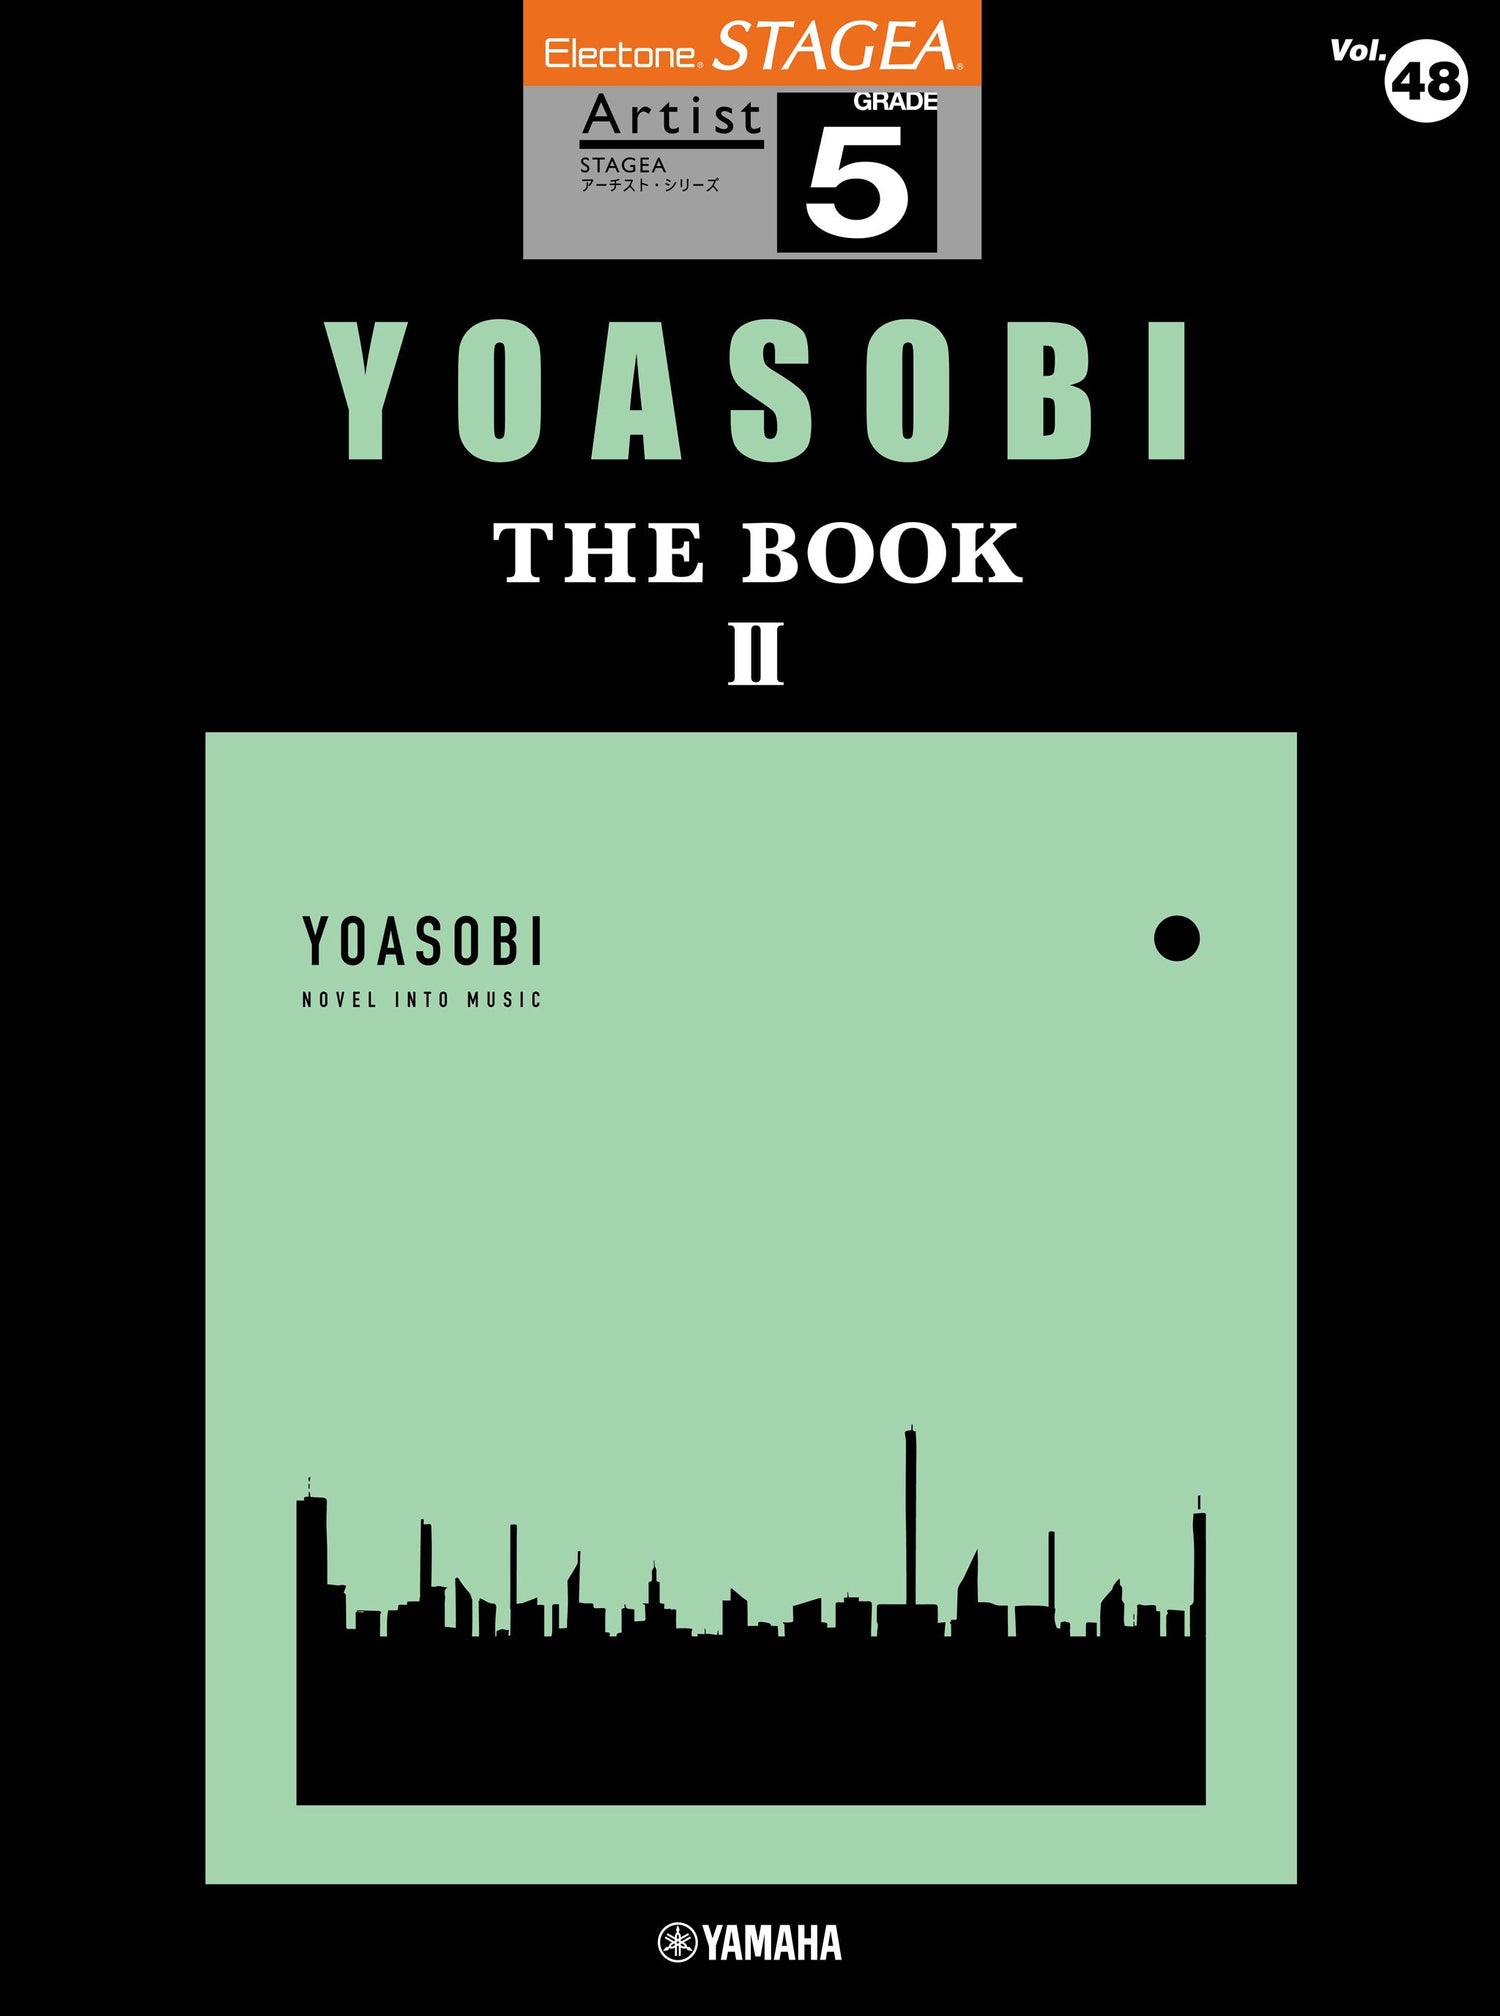 STAGEA アーチスト 5級 Vol.48 YOASOBI 『THE BOOK 2』